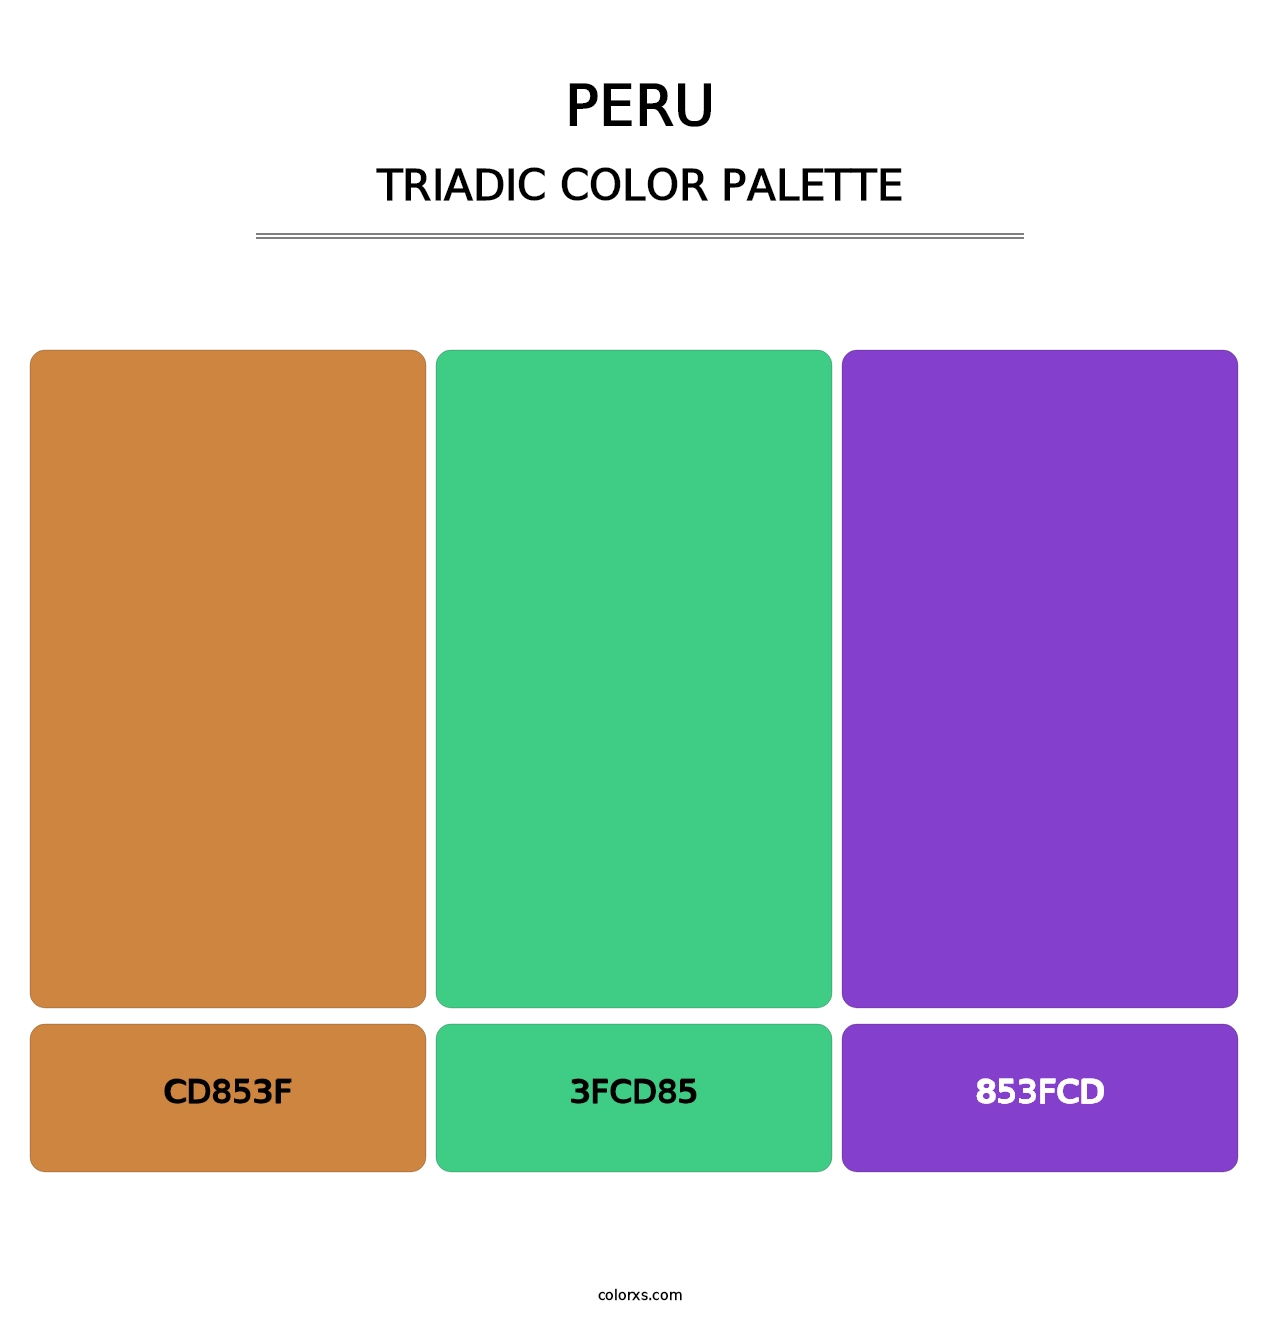 Peru - Triadic Color Palette